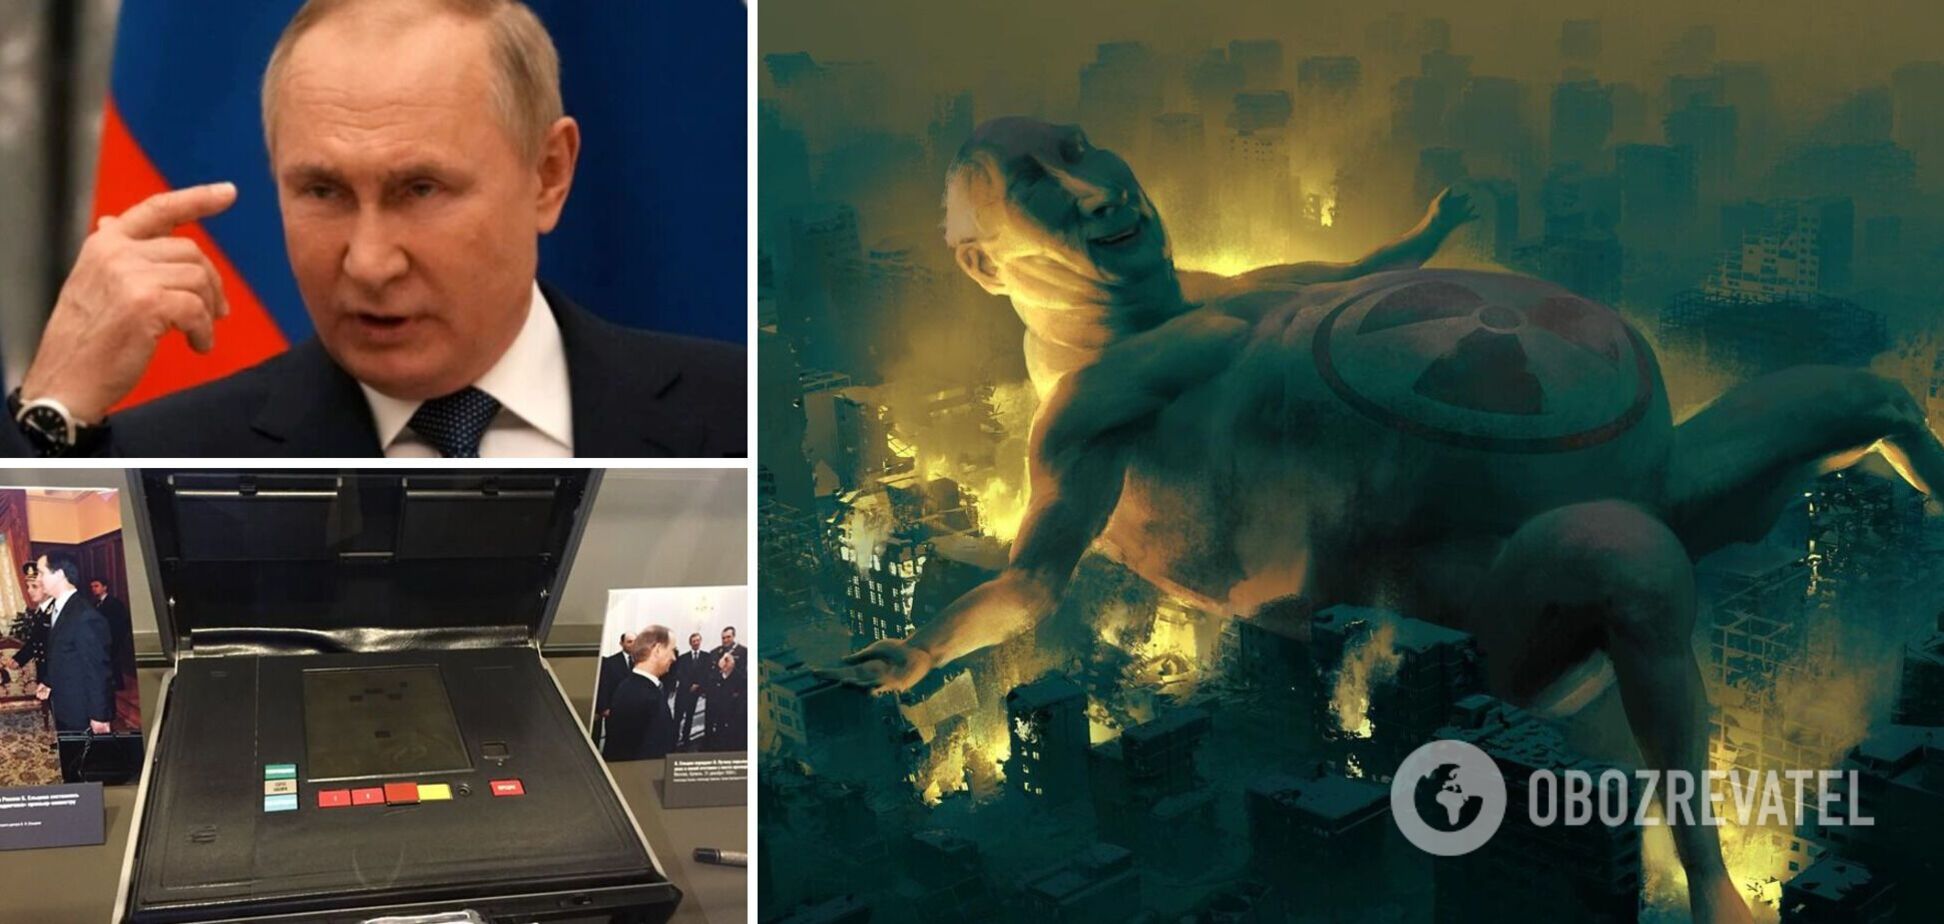 Монстр, якого не зупинити. Український художник новою картиною з голим Путіним попередив світ про ядерне пекло